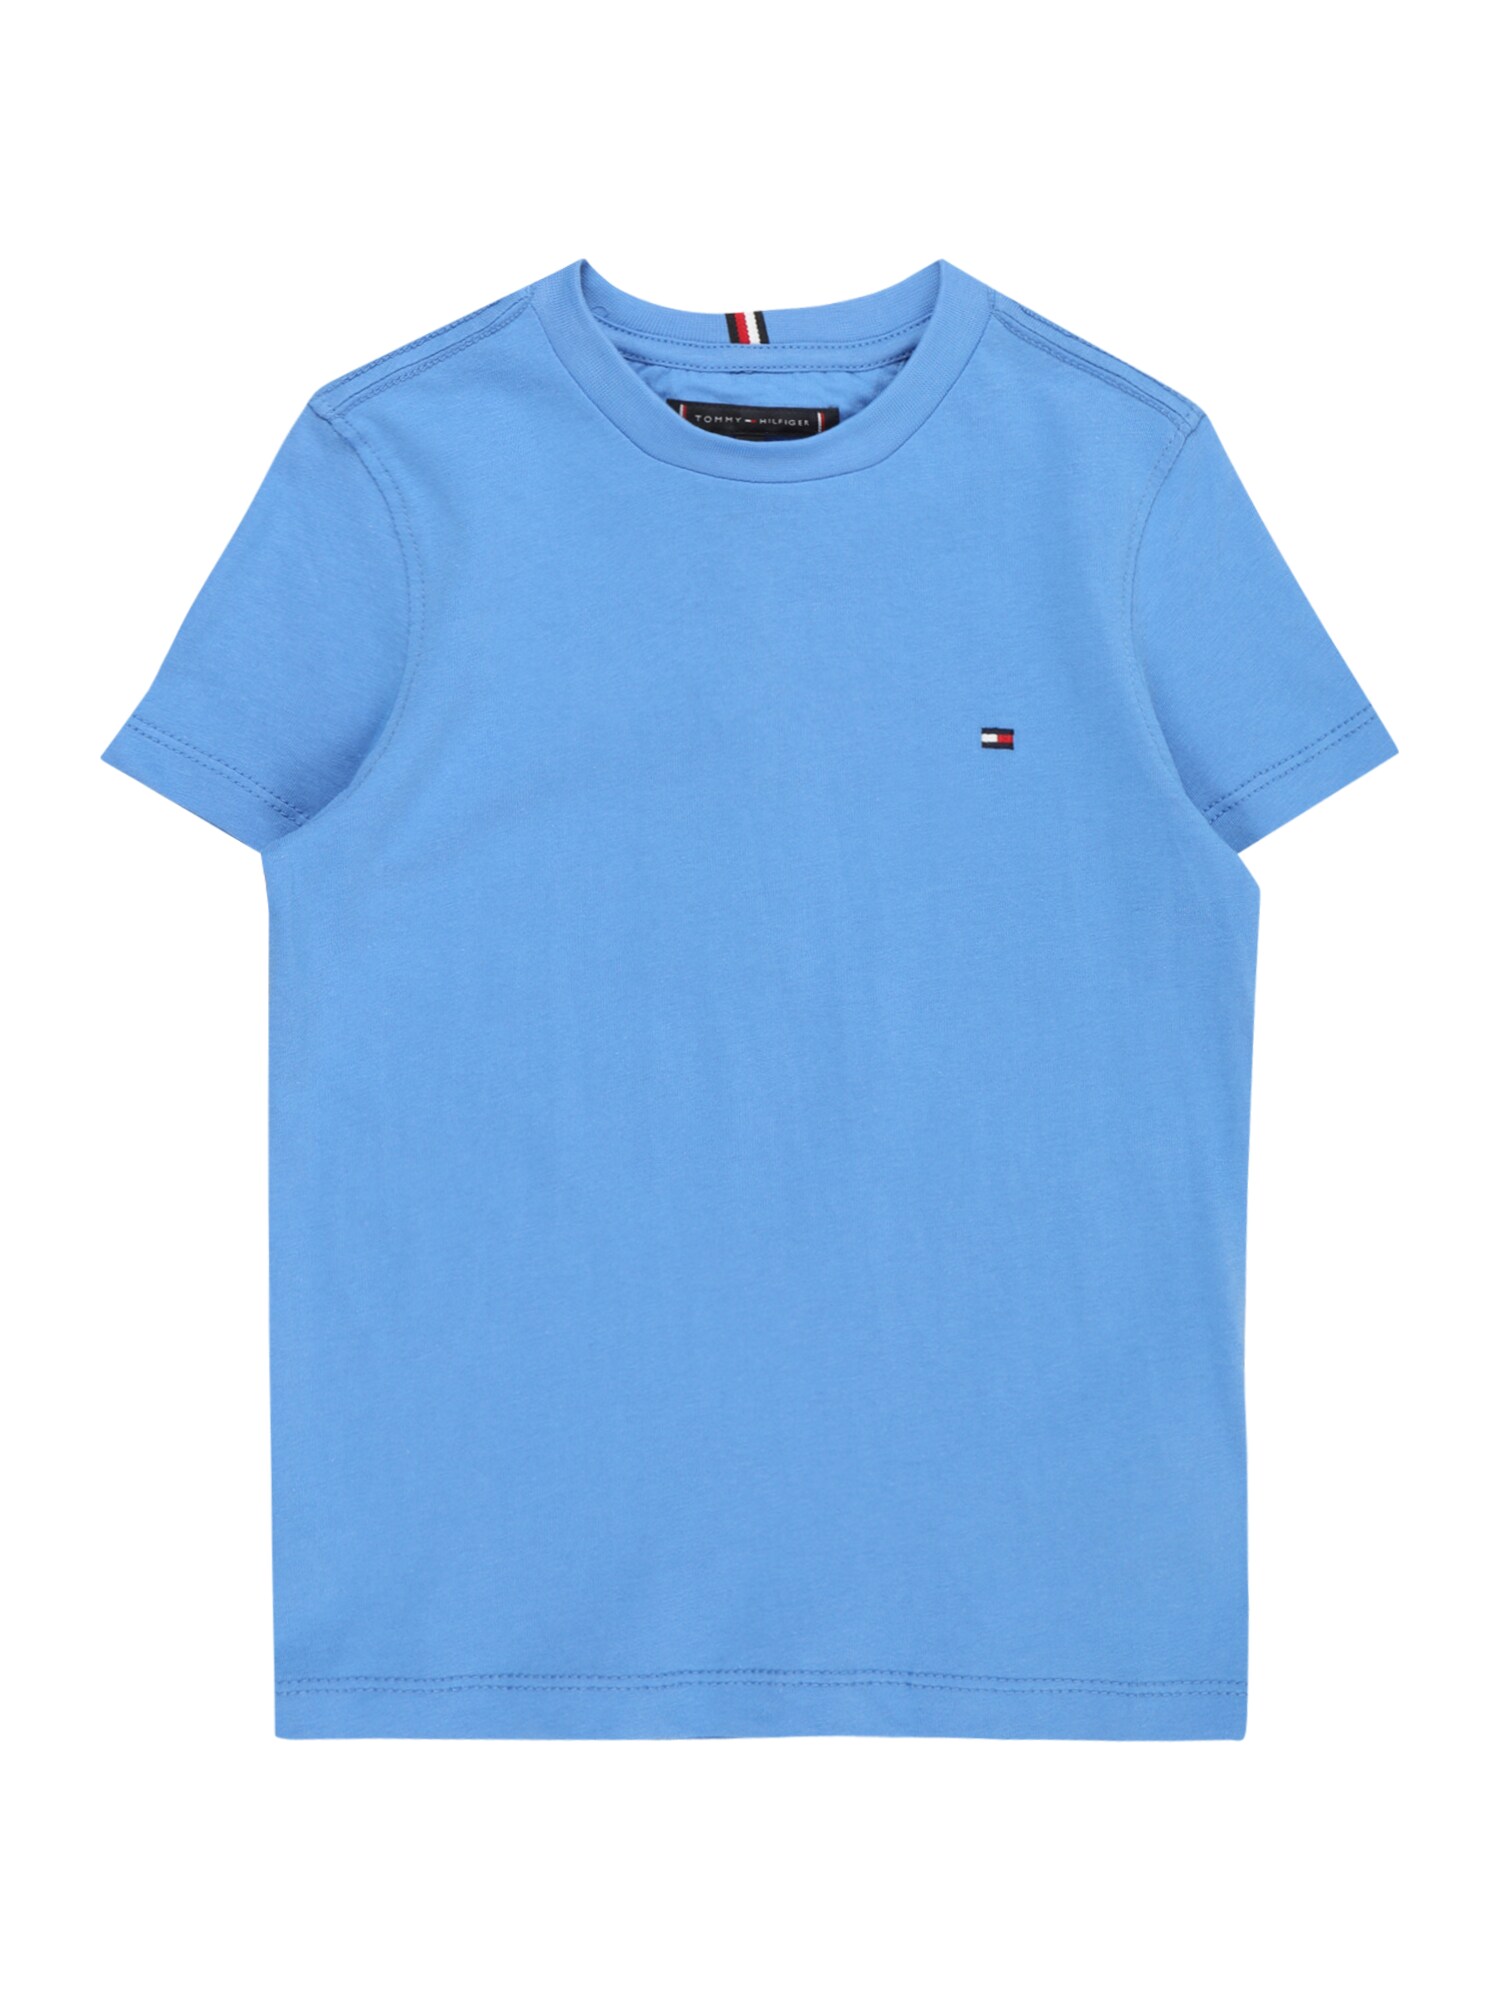 TOMMY HILFIGER Marškinėliai 'ESSENTIAL' tamsiai mėlyna / dangaus žydra / raudona / balta